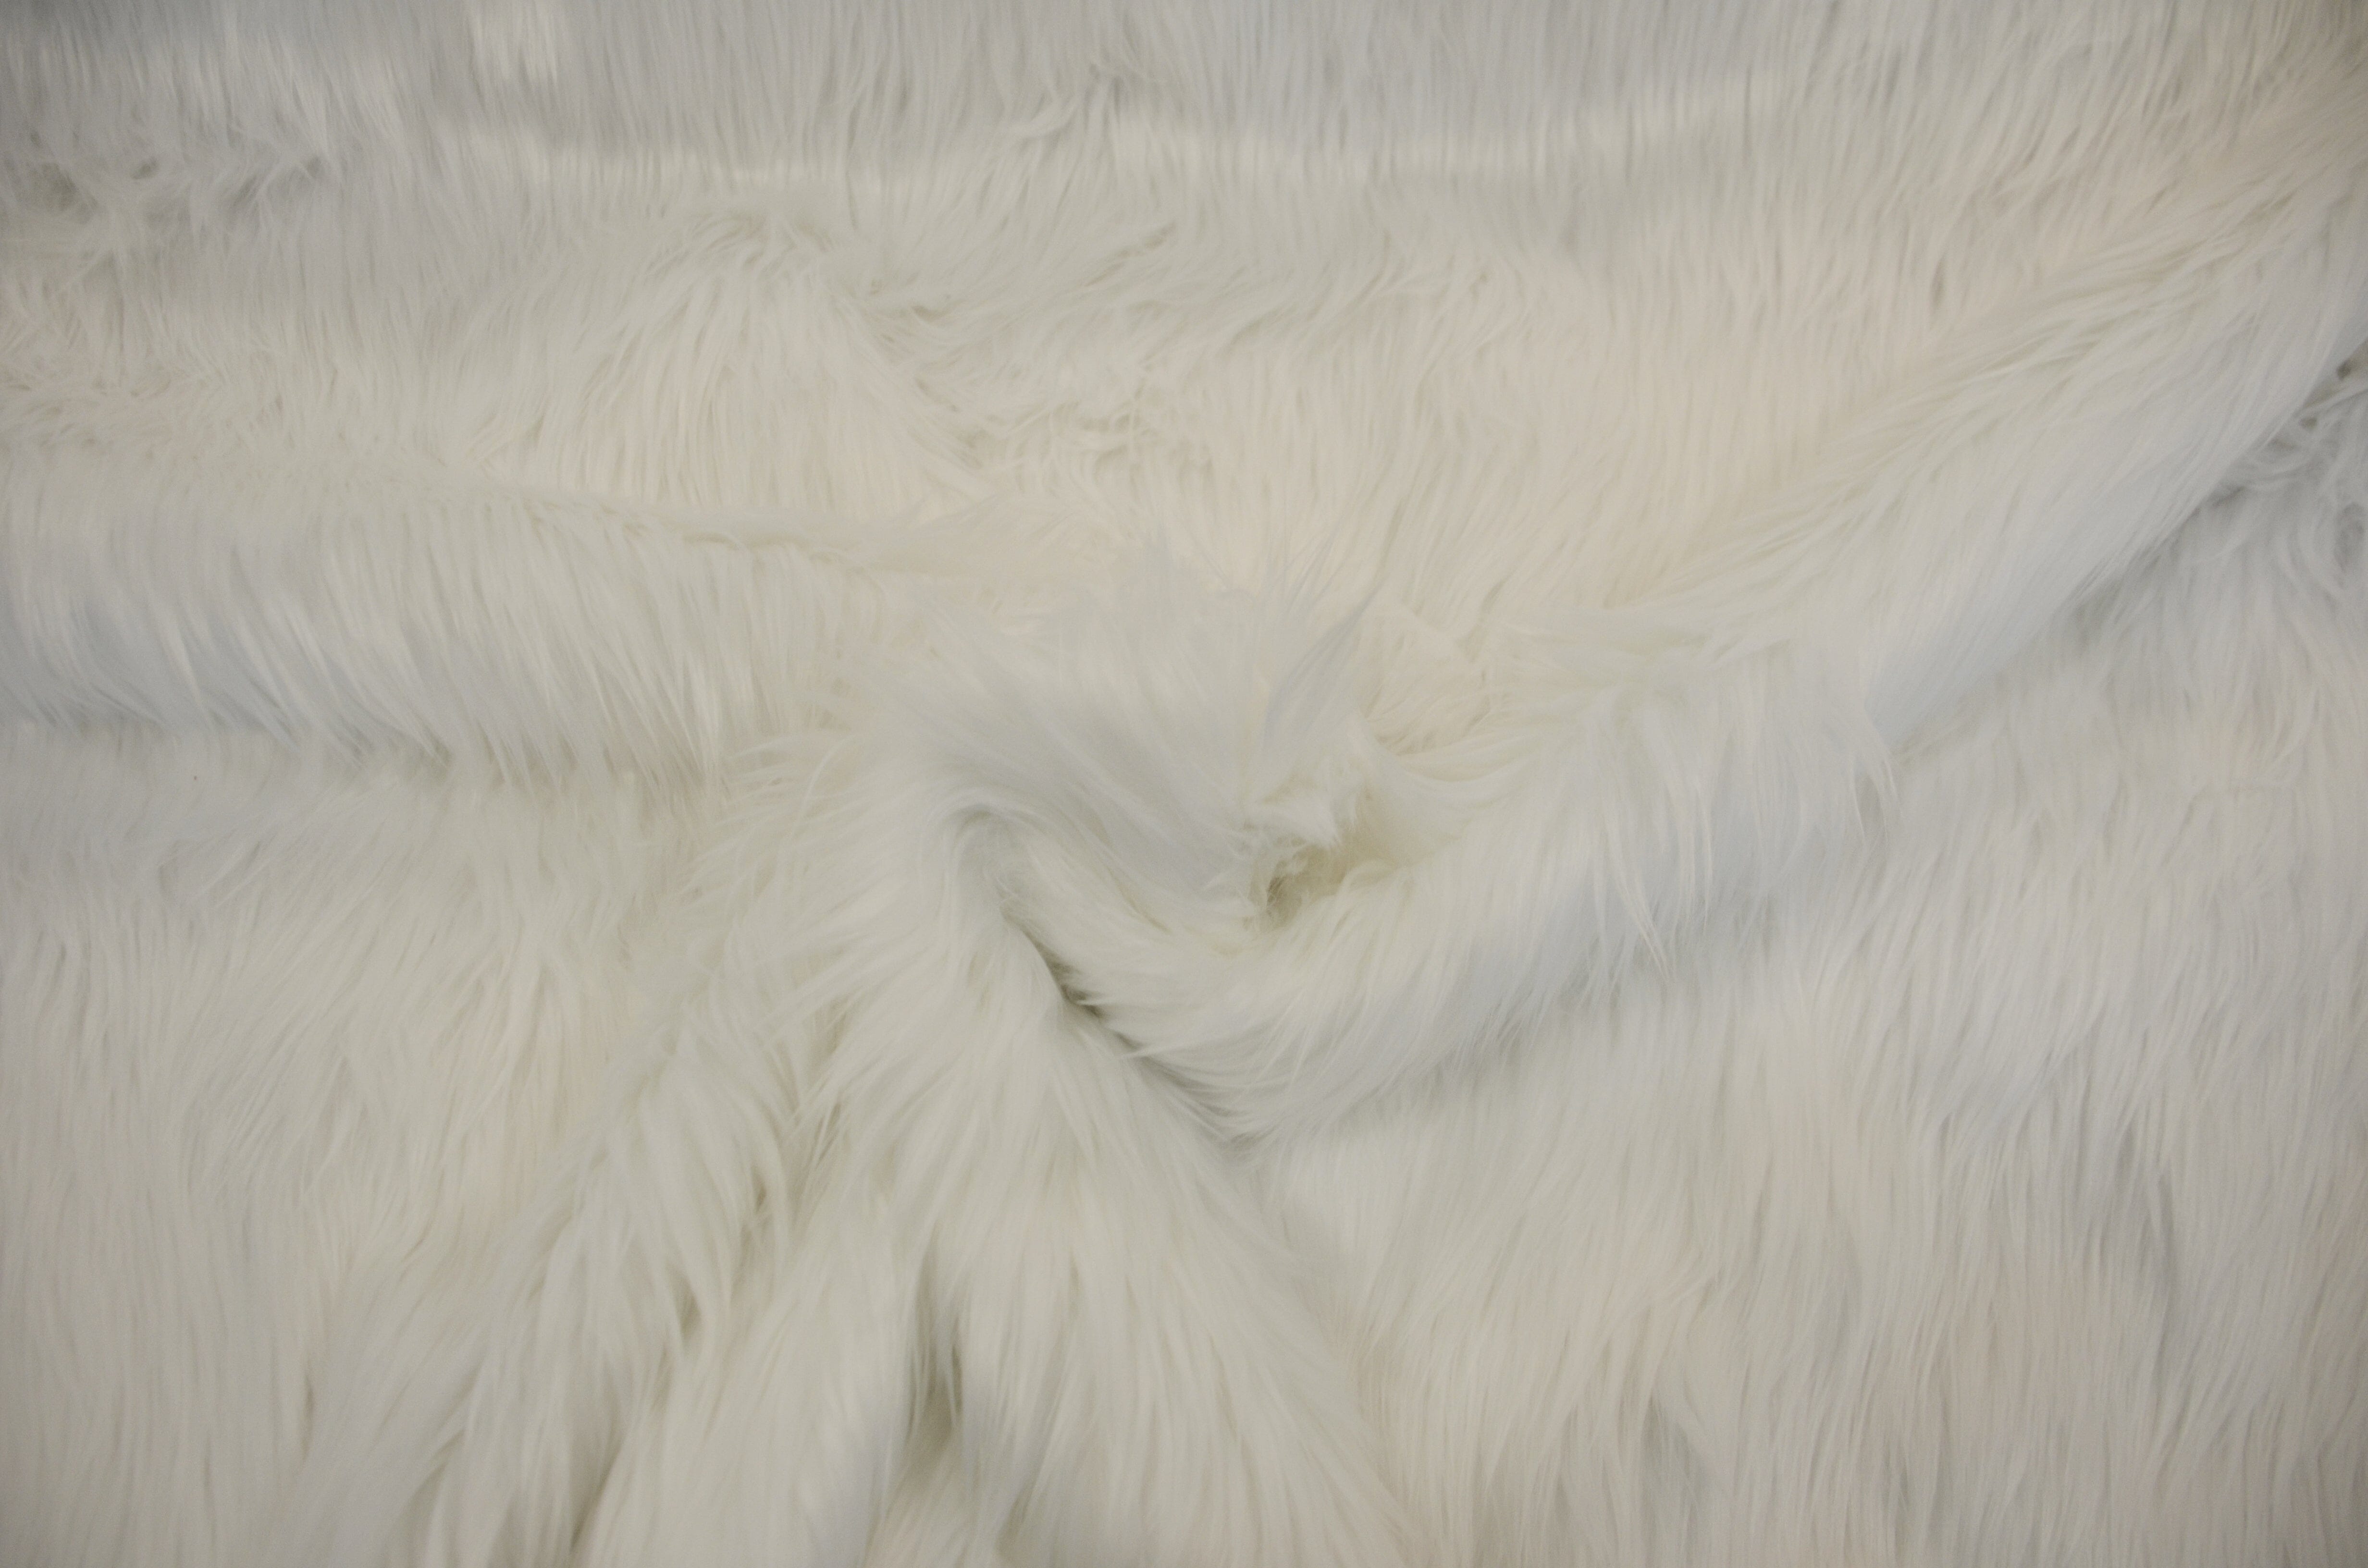 White Faux Fur 2 Pile | White Fur Fabric | Fursuit Fur | Fake Fur Fabric |  Costume & Cosplay Fur Fabric | Long Pile Faux Fur | White Shag 